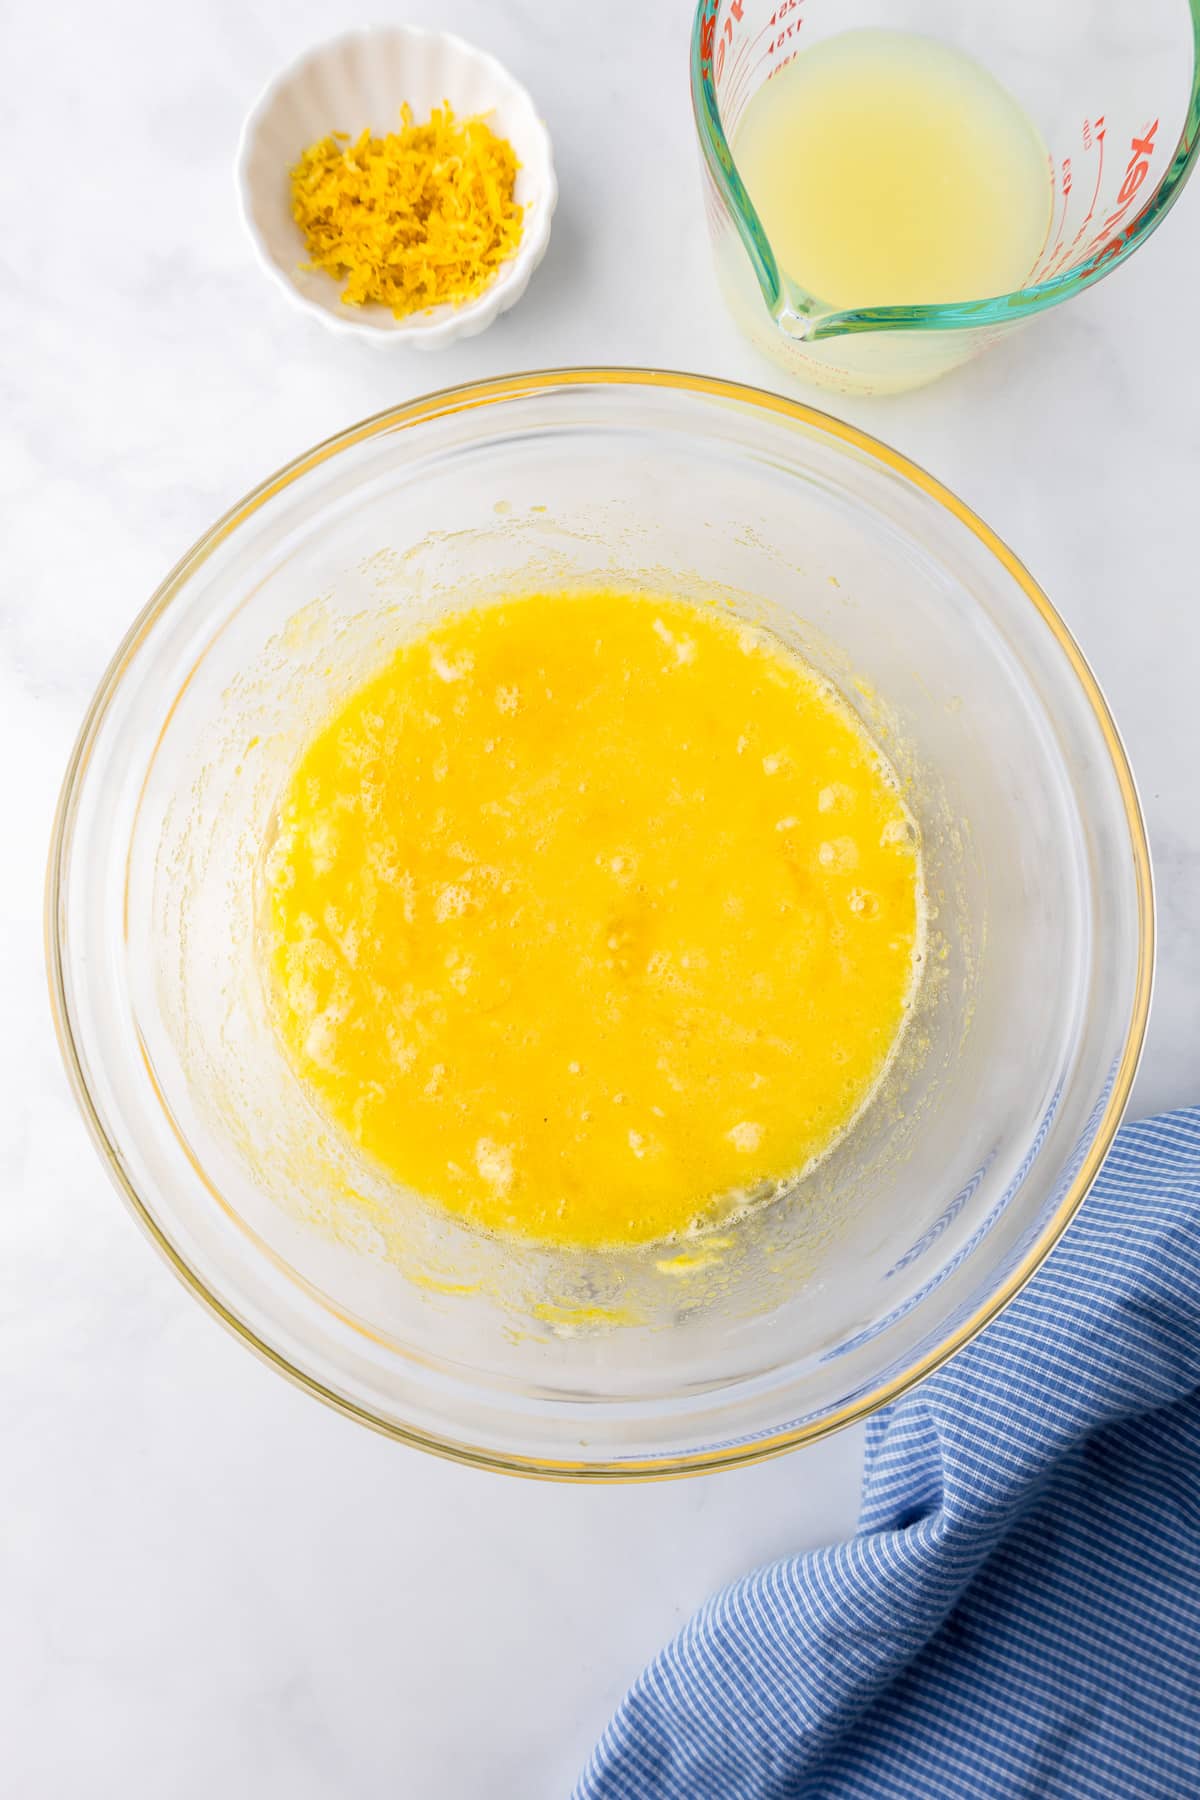 Lemon juice and lemon zest being added to a large bowl of lemon curd filling.